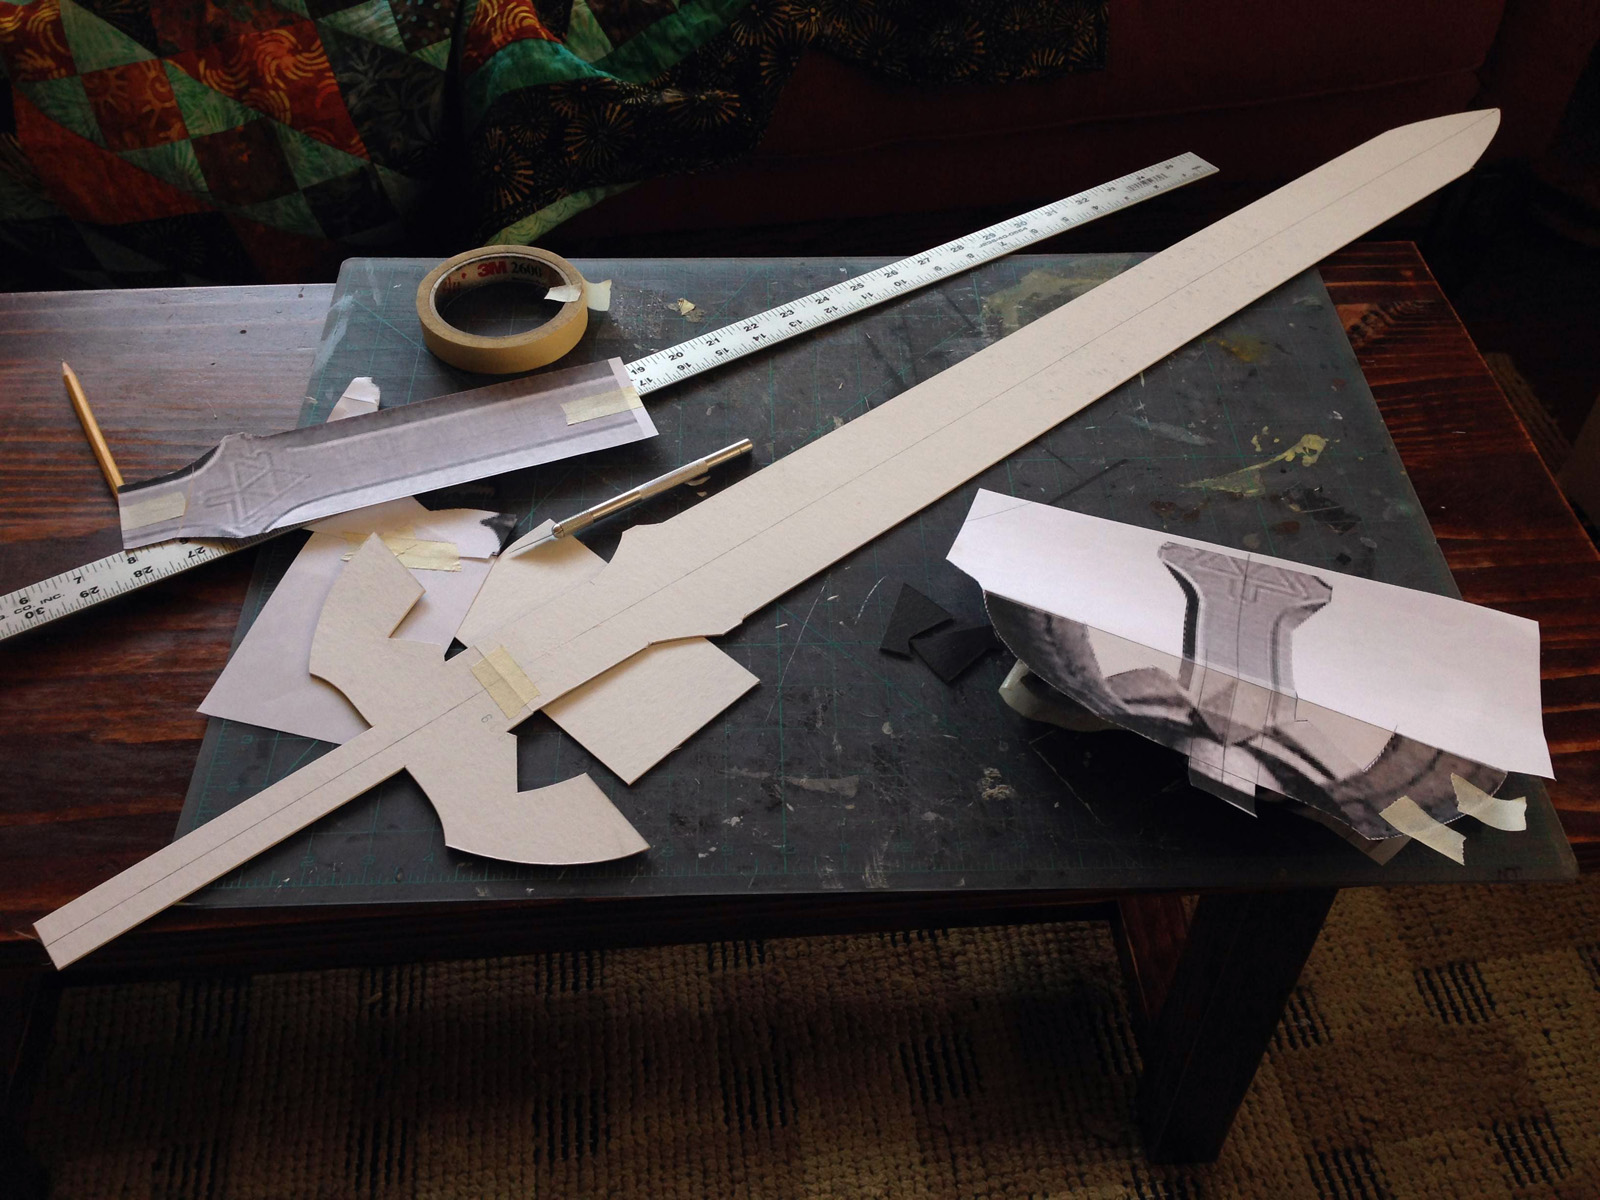 prop sword template